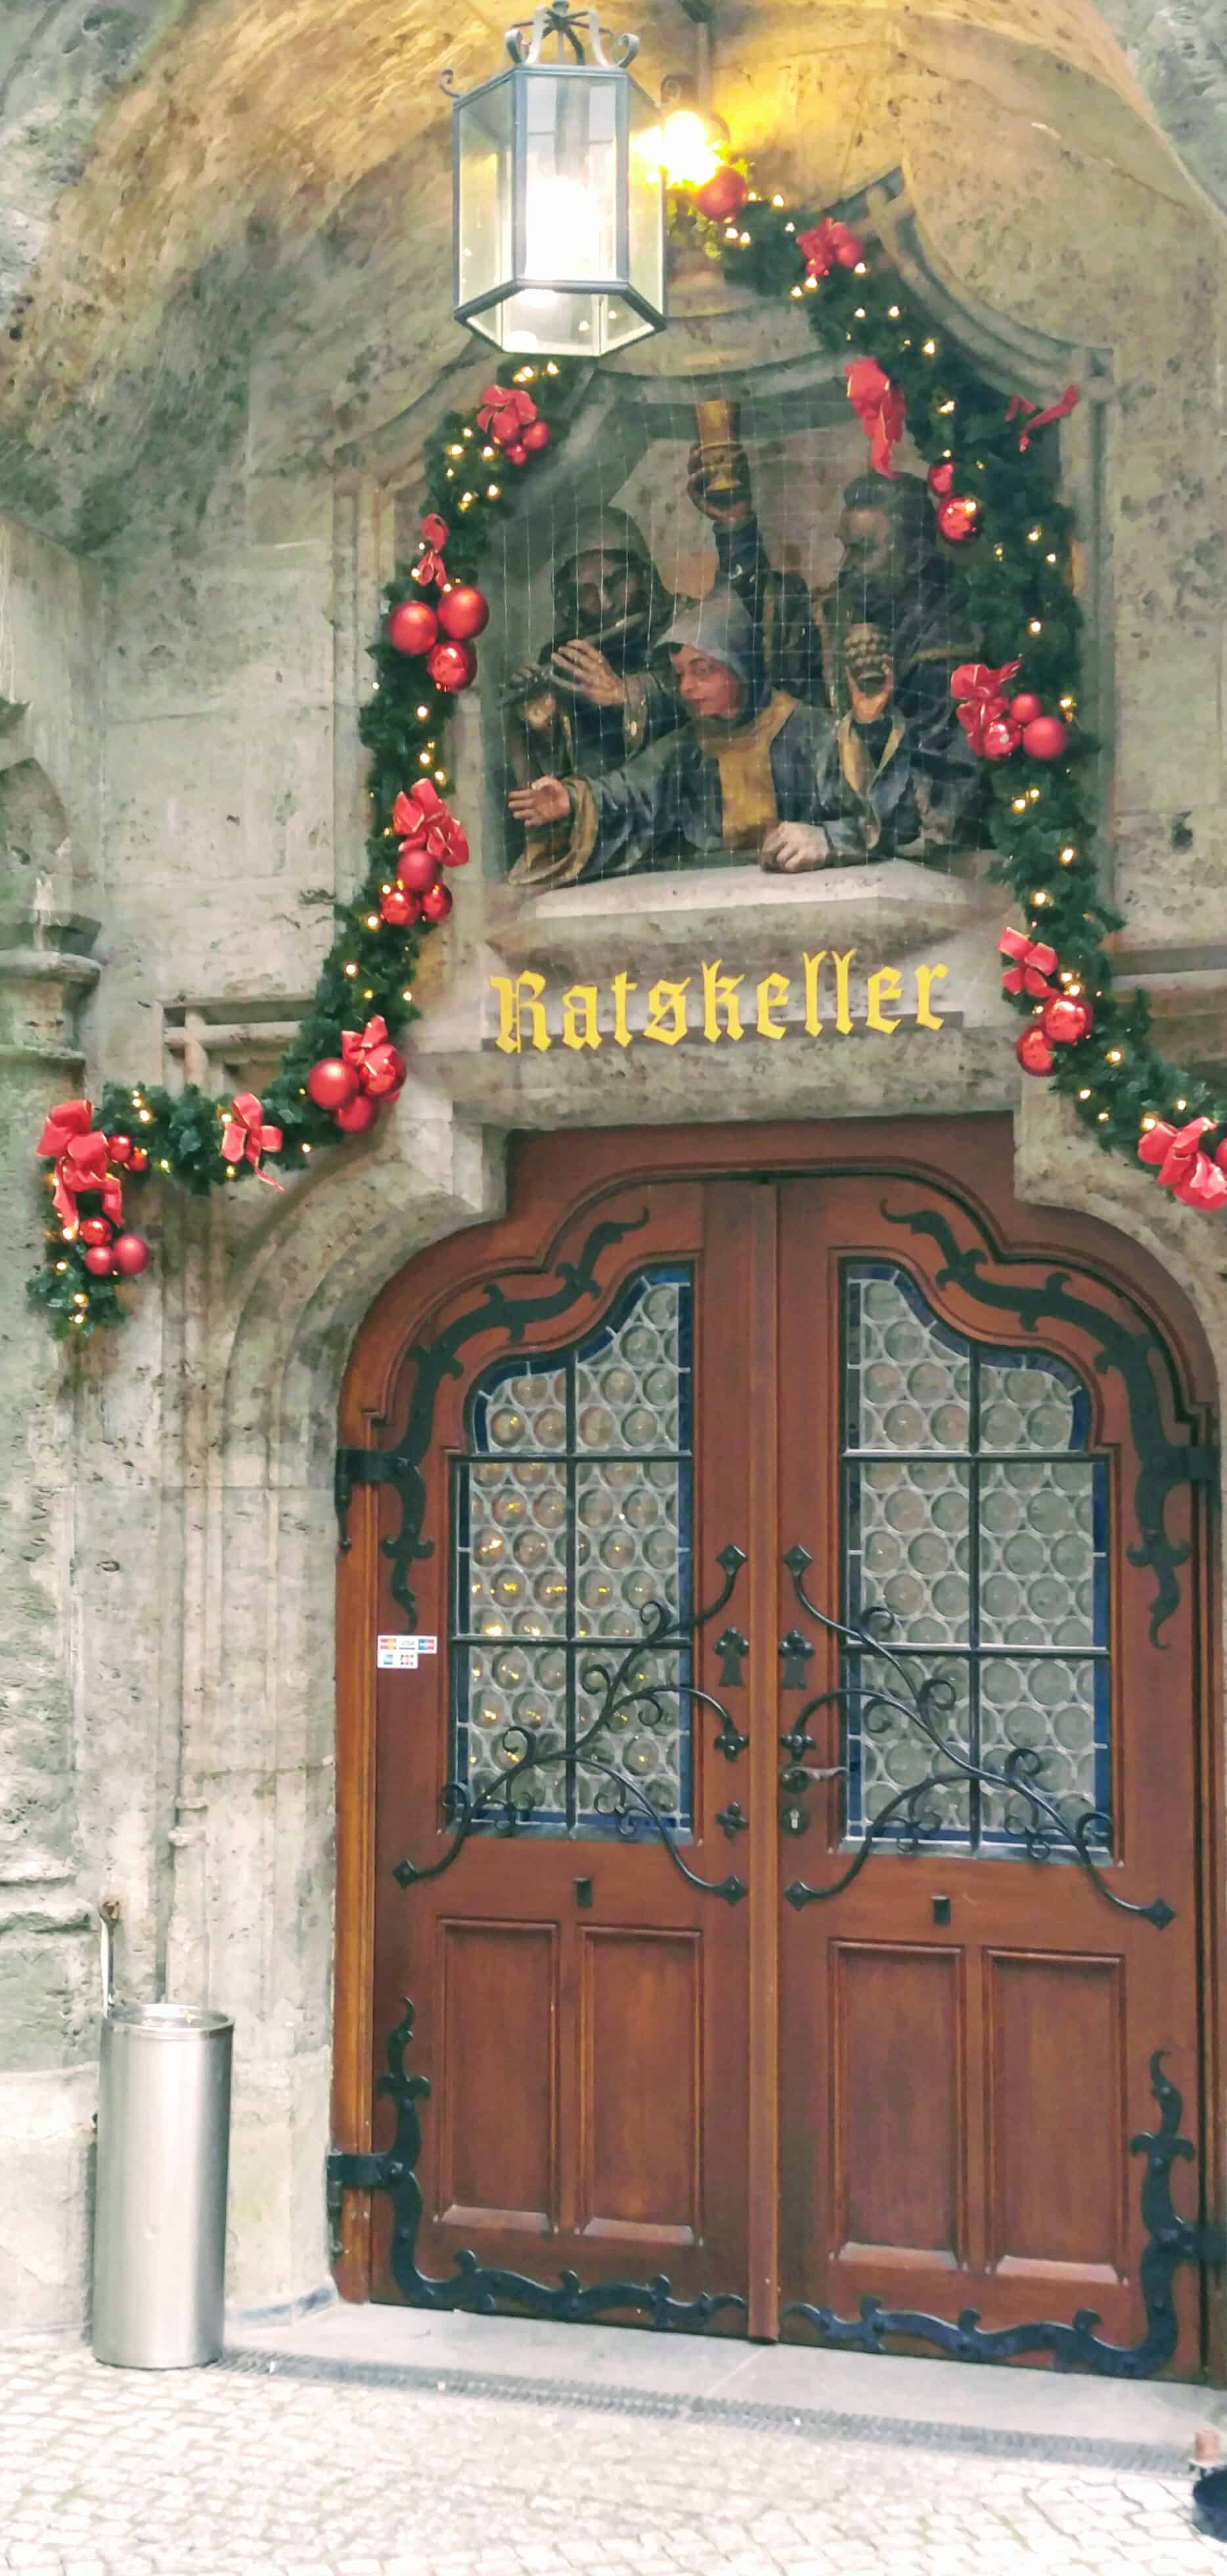 Ratskeller Door in Munich